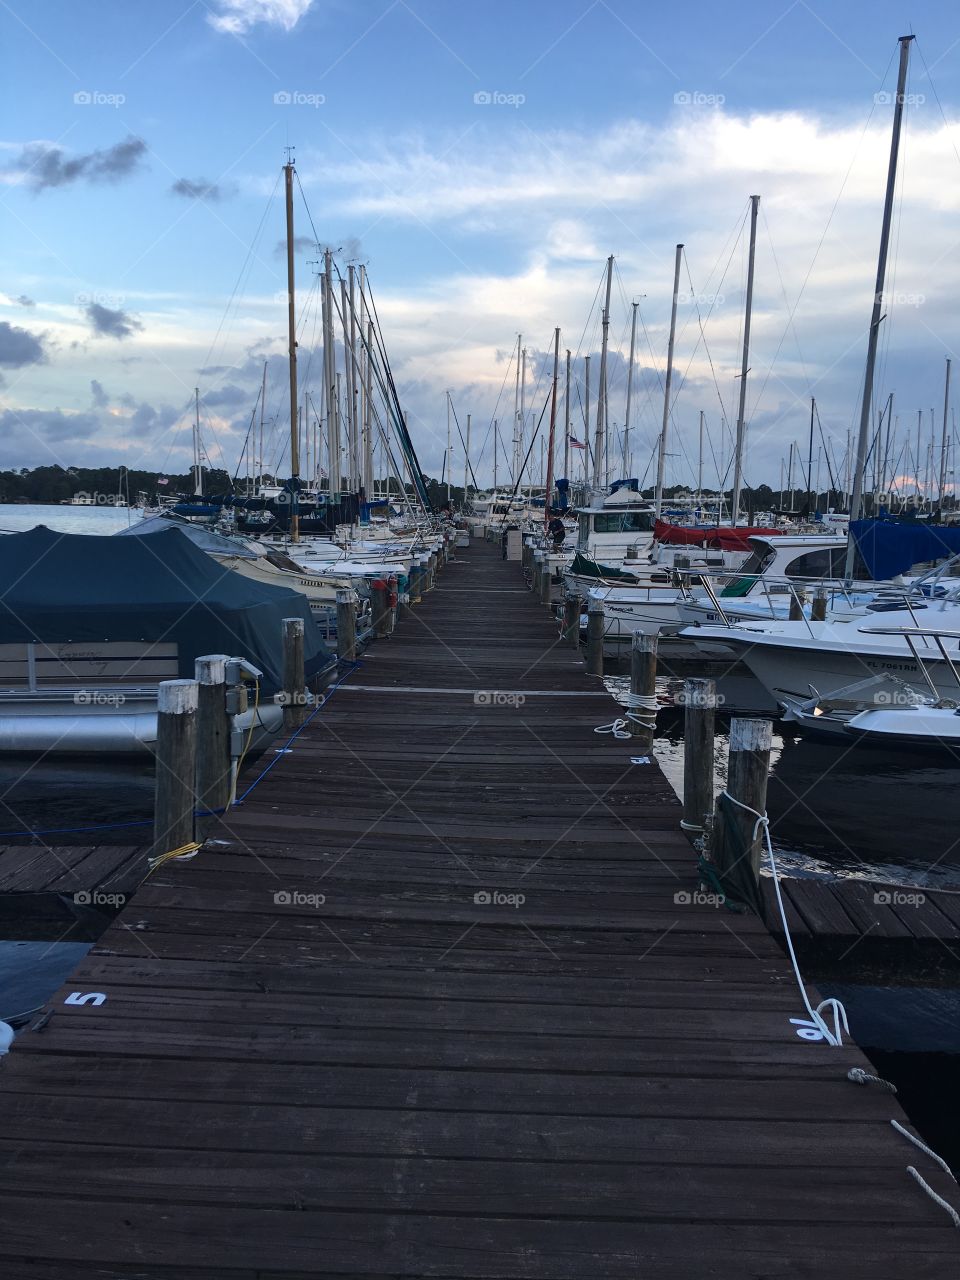 Dock,boat